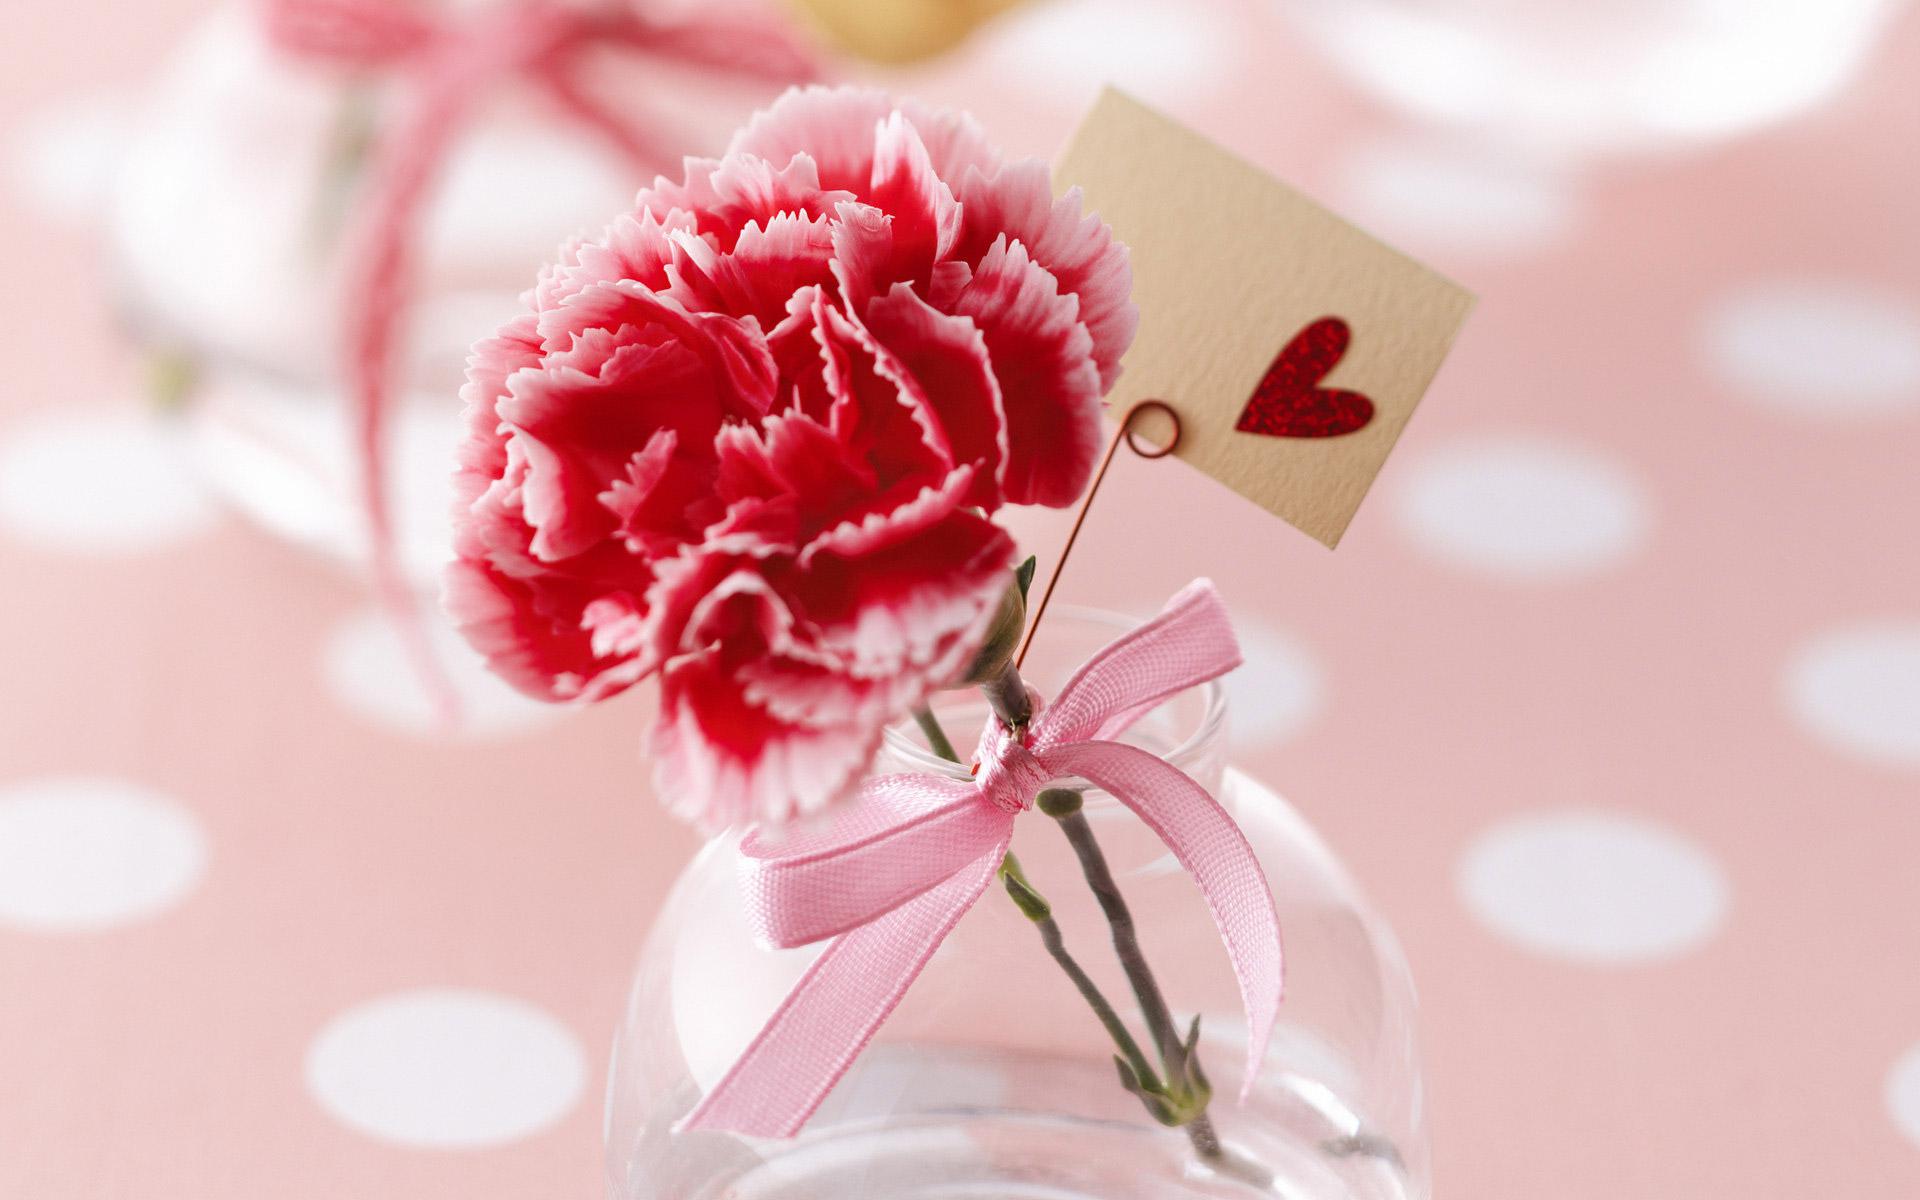 Скачать обои бесплатно Цветок, Сердце, Гвоздика, День Святого Валентина, Праздничные, Пинк картинка на рабочий стол ПК